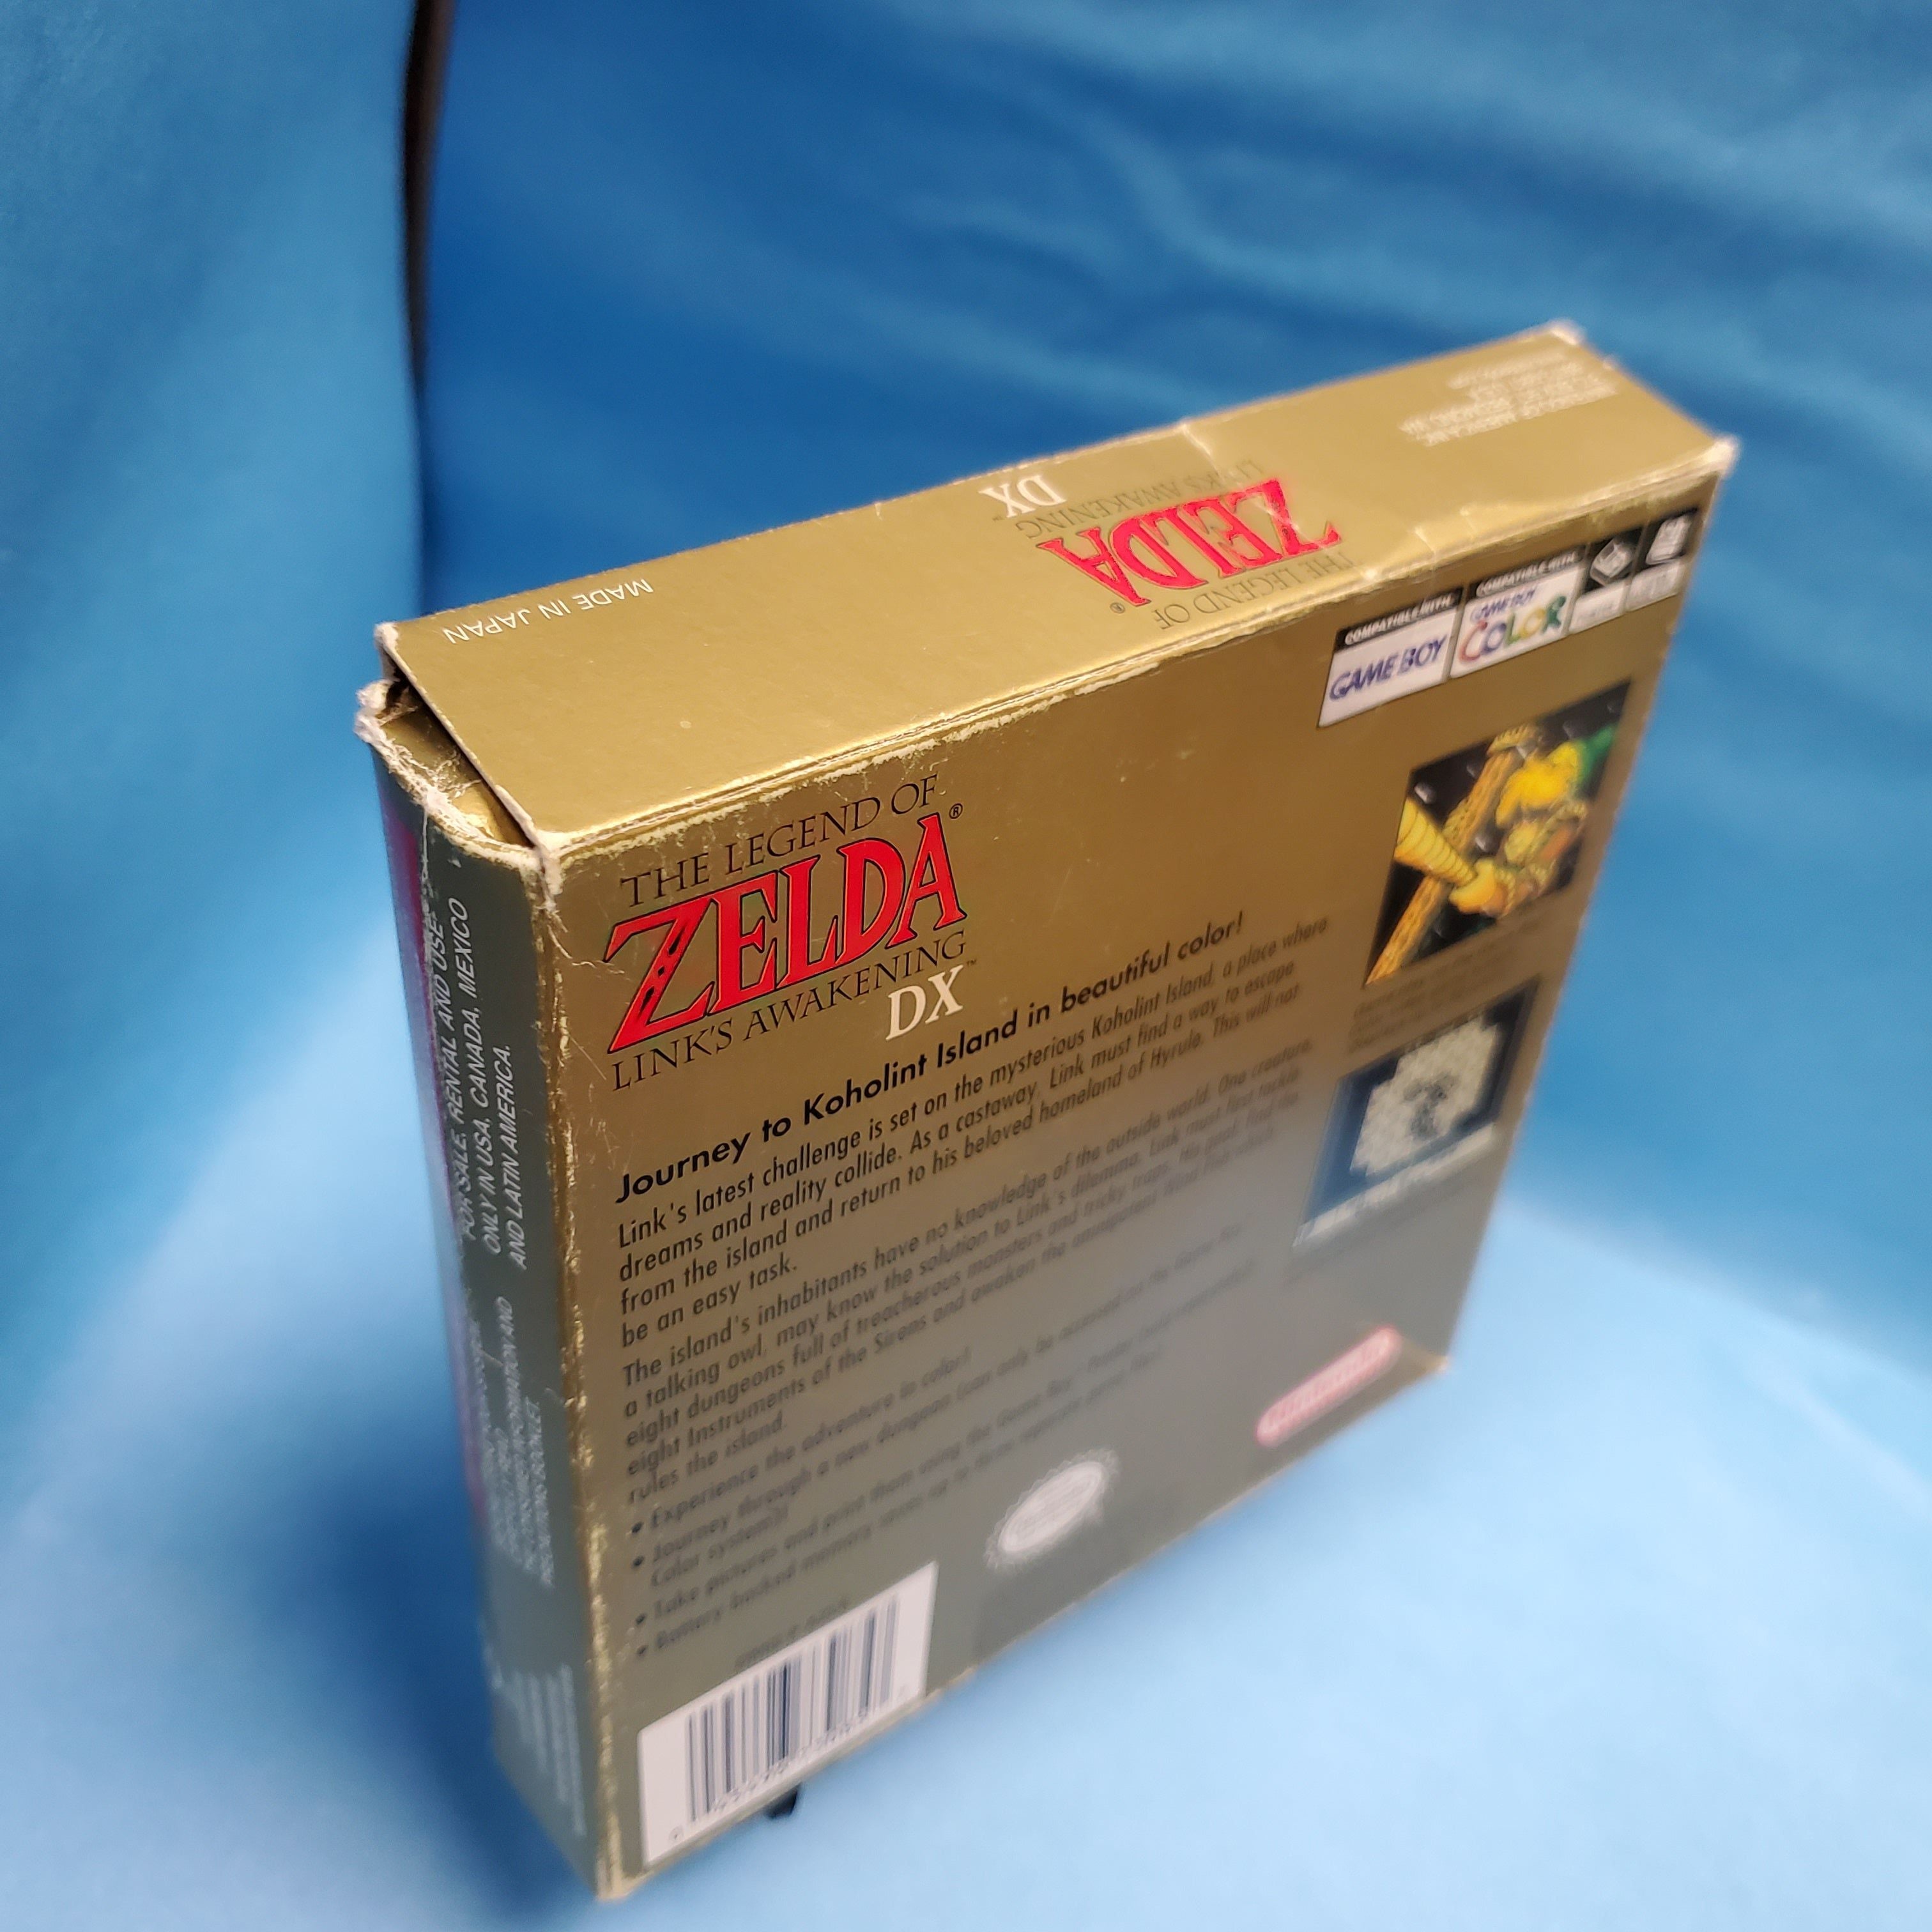 GBC - The Legend Of Zelda Link's Awakening DX (Complete in Box)